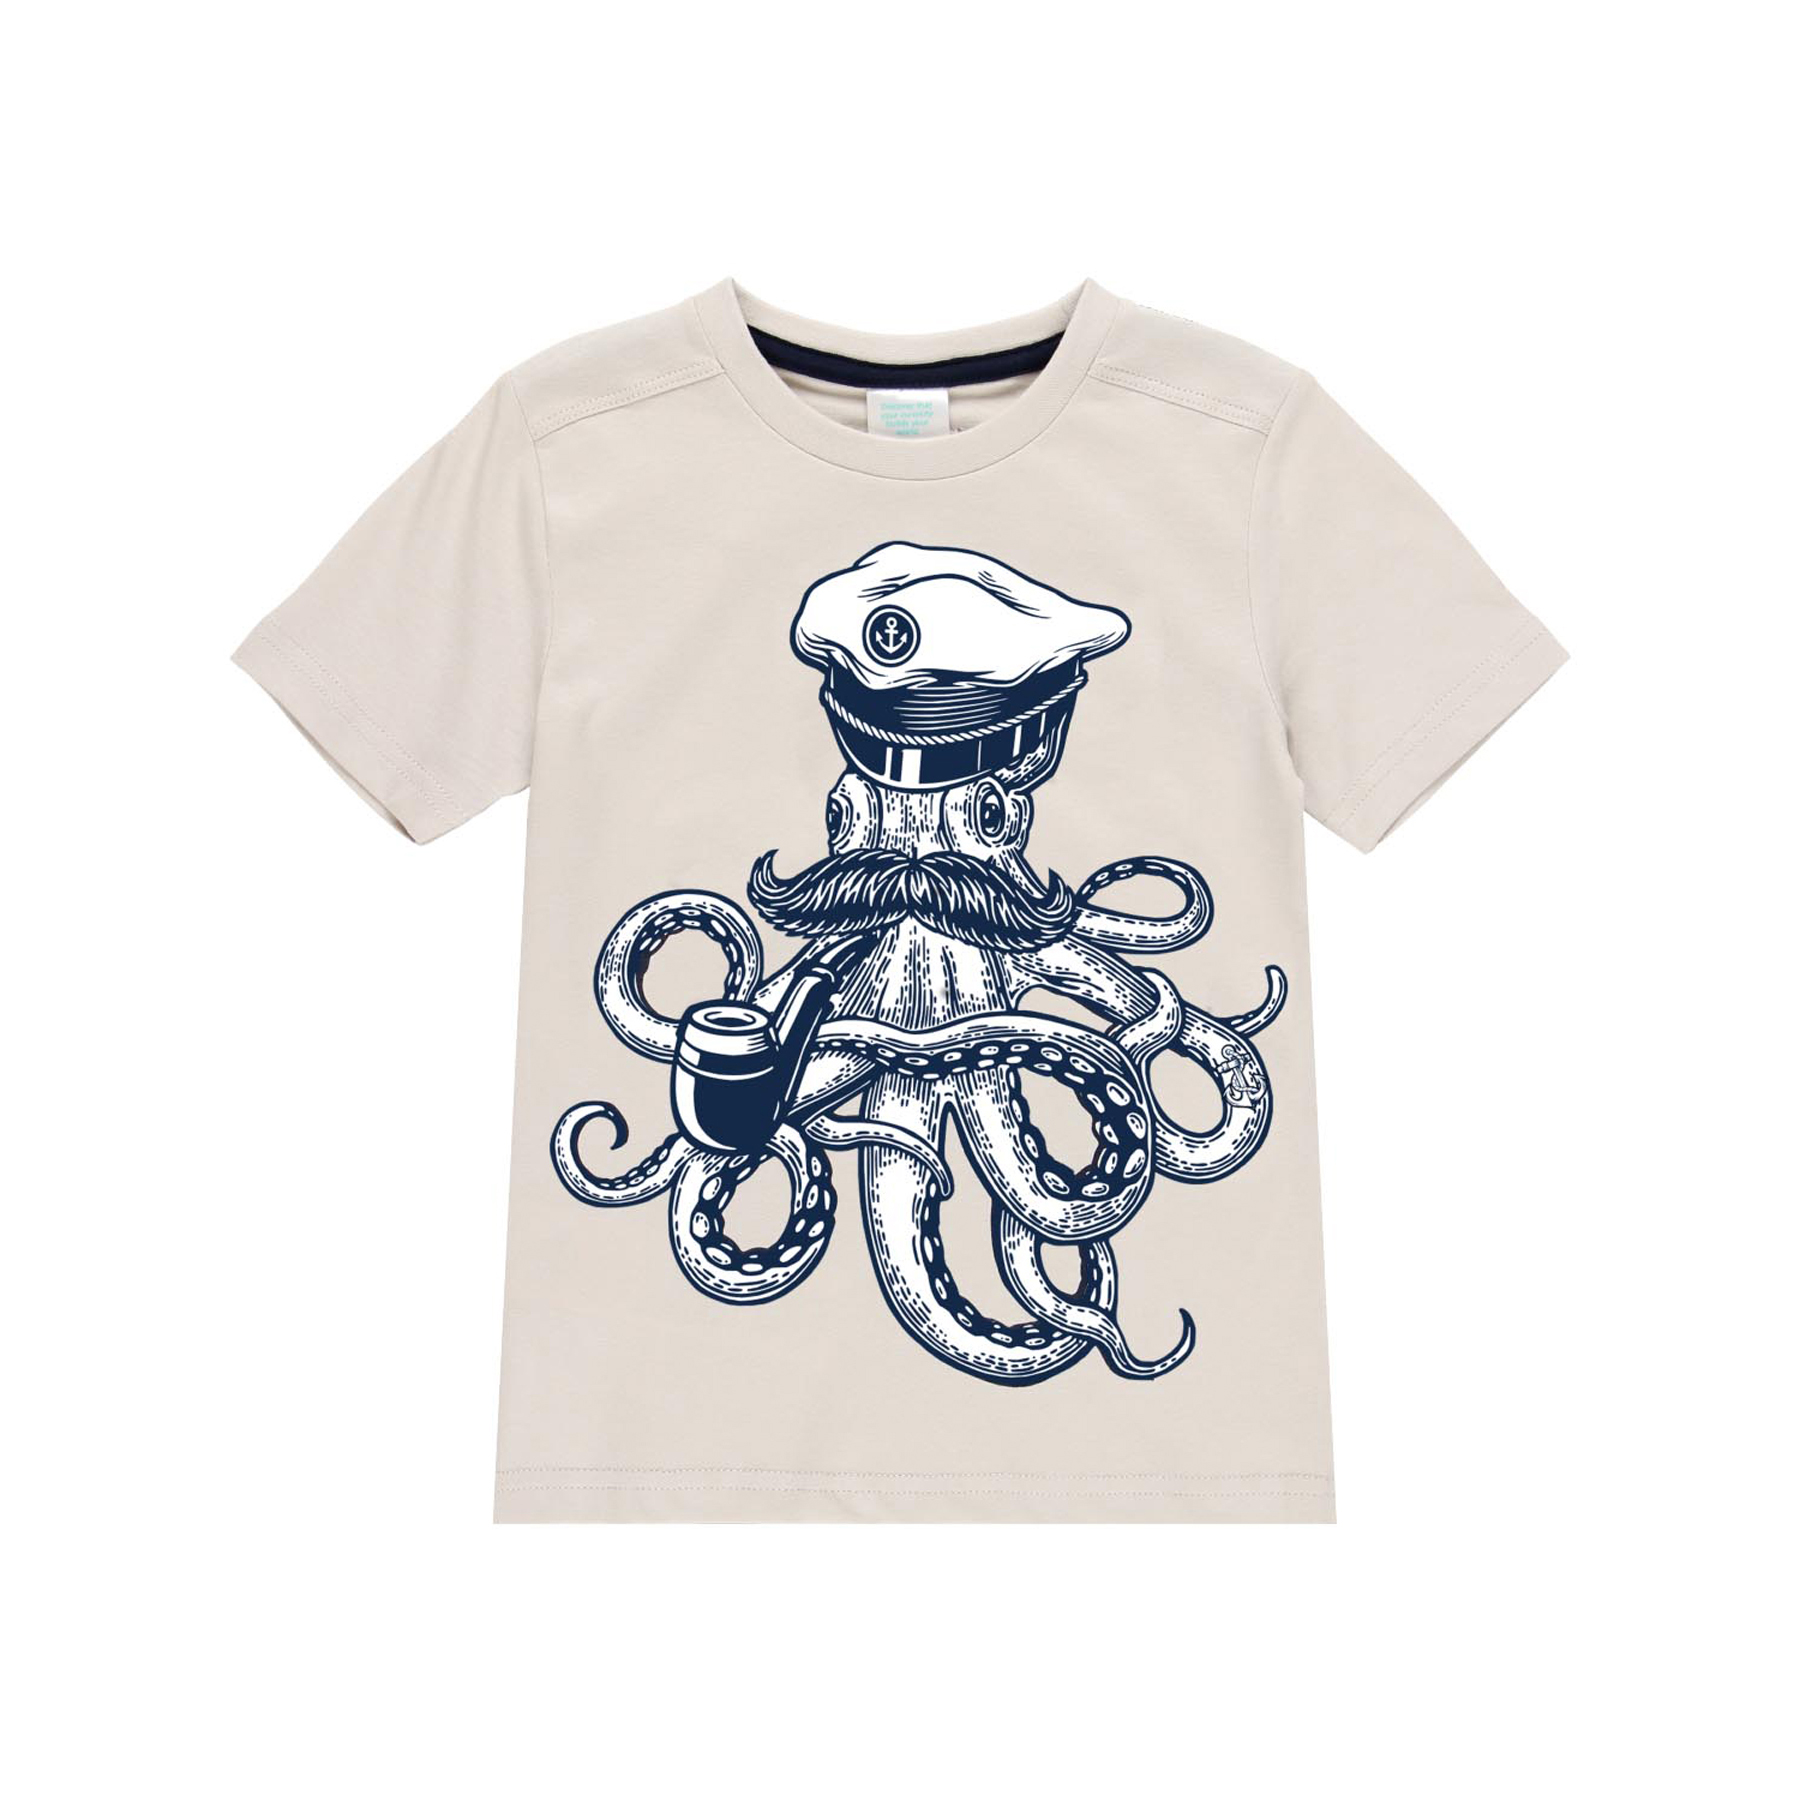 Octopus shirt 1